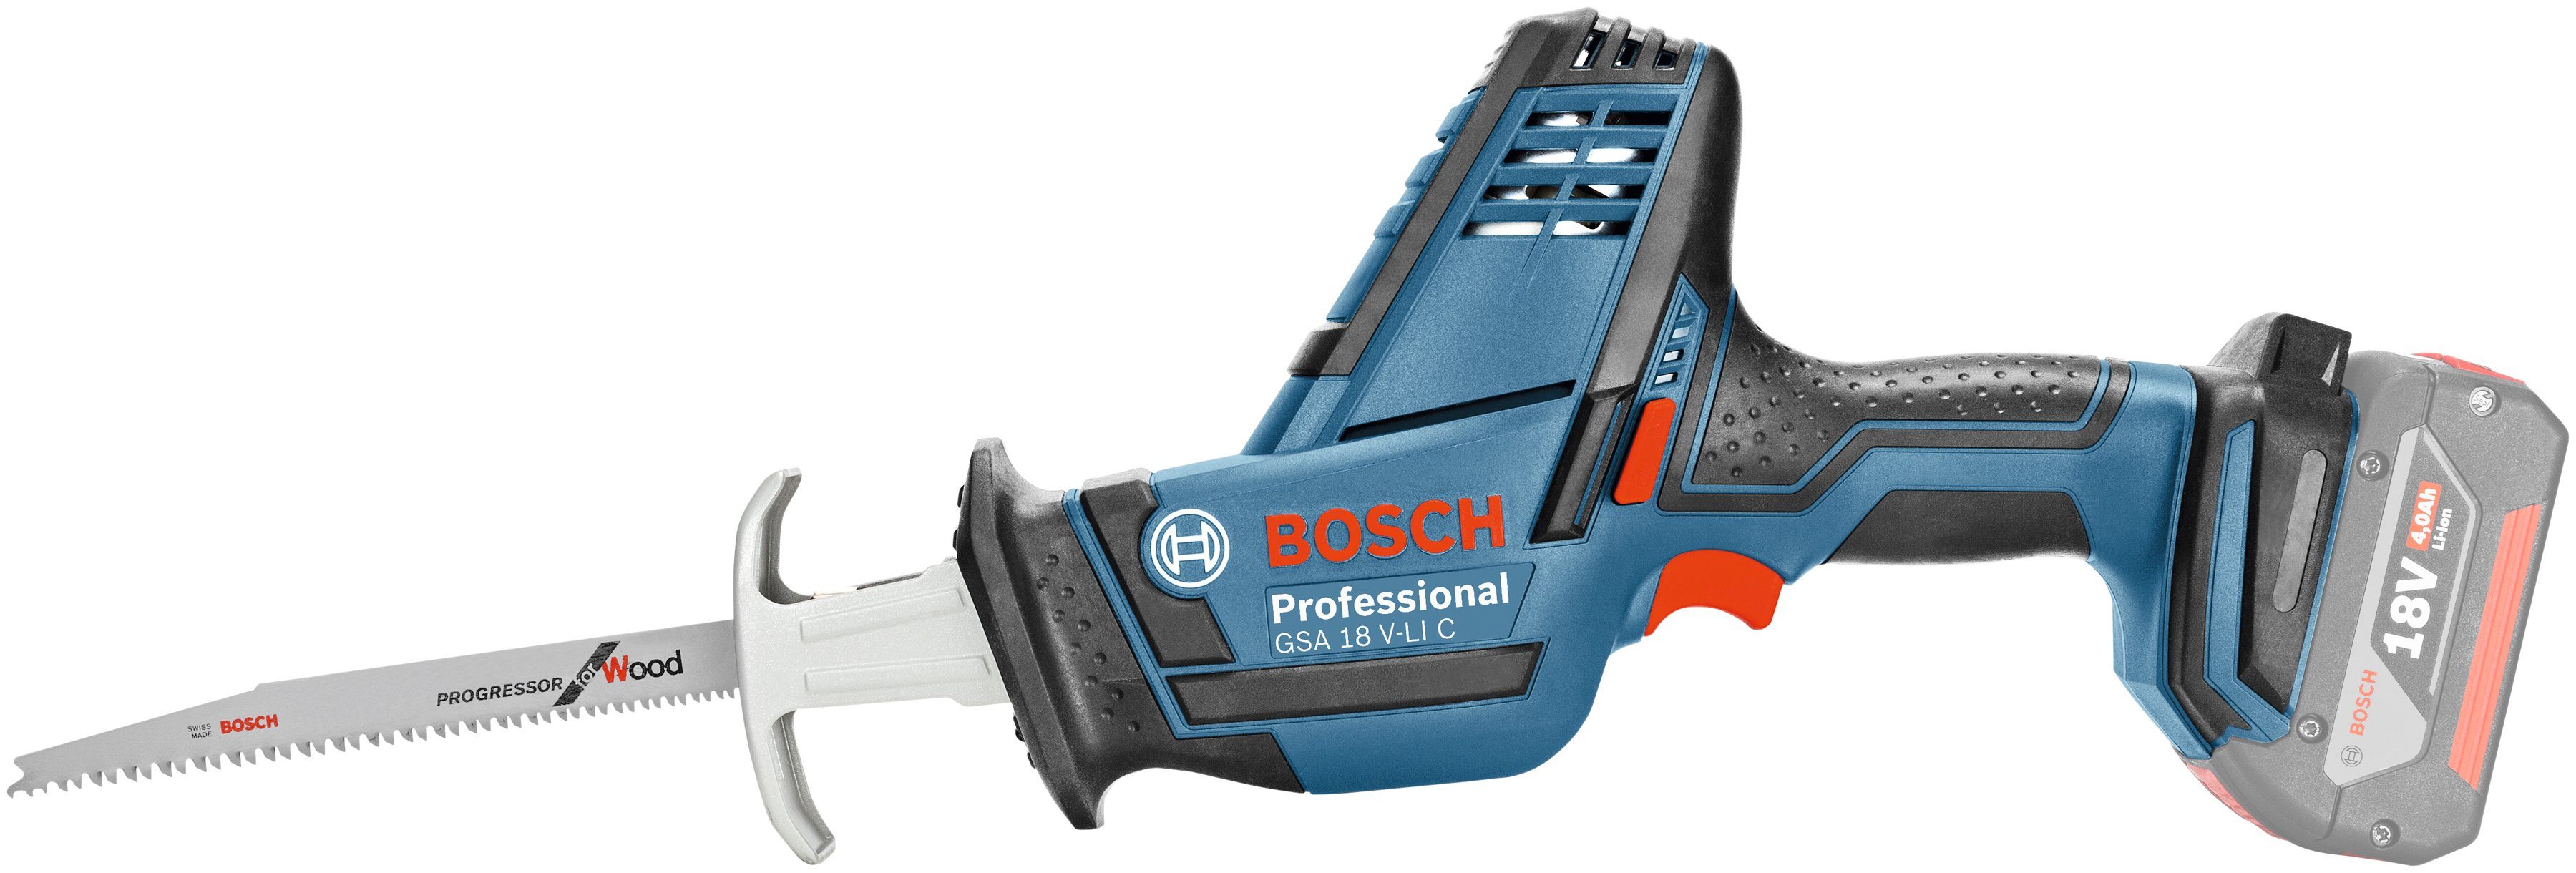 Bosch Professional Akku-Säbelsäge GSA 18 V-LI C, ohne Akku oder Ladegerät